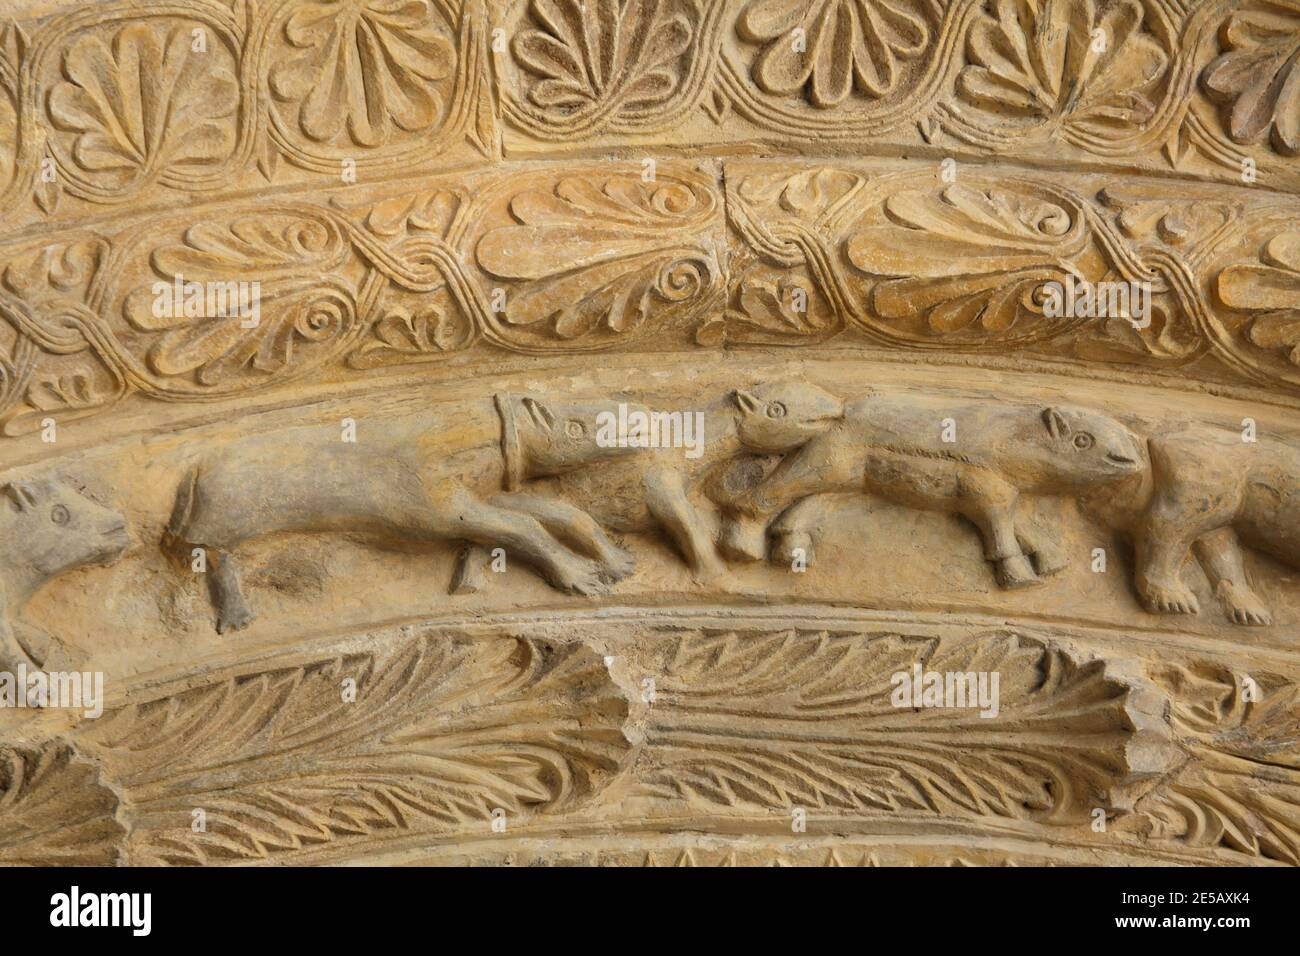 Hunde und Wölfe, die auf dem romanischen Portal aus dem letzten Viertel des 12. Jahrhunderts an der Südfassade der Kirche des Heiligen Prokopius (Kostel svatého Prokopa) in Záboří nad Labem in Mittelböhmen, Tschechische Republik, abgebildet sind. Stockfoto